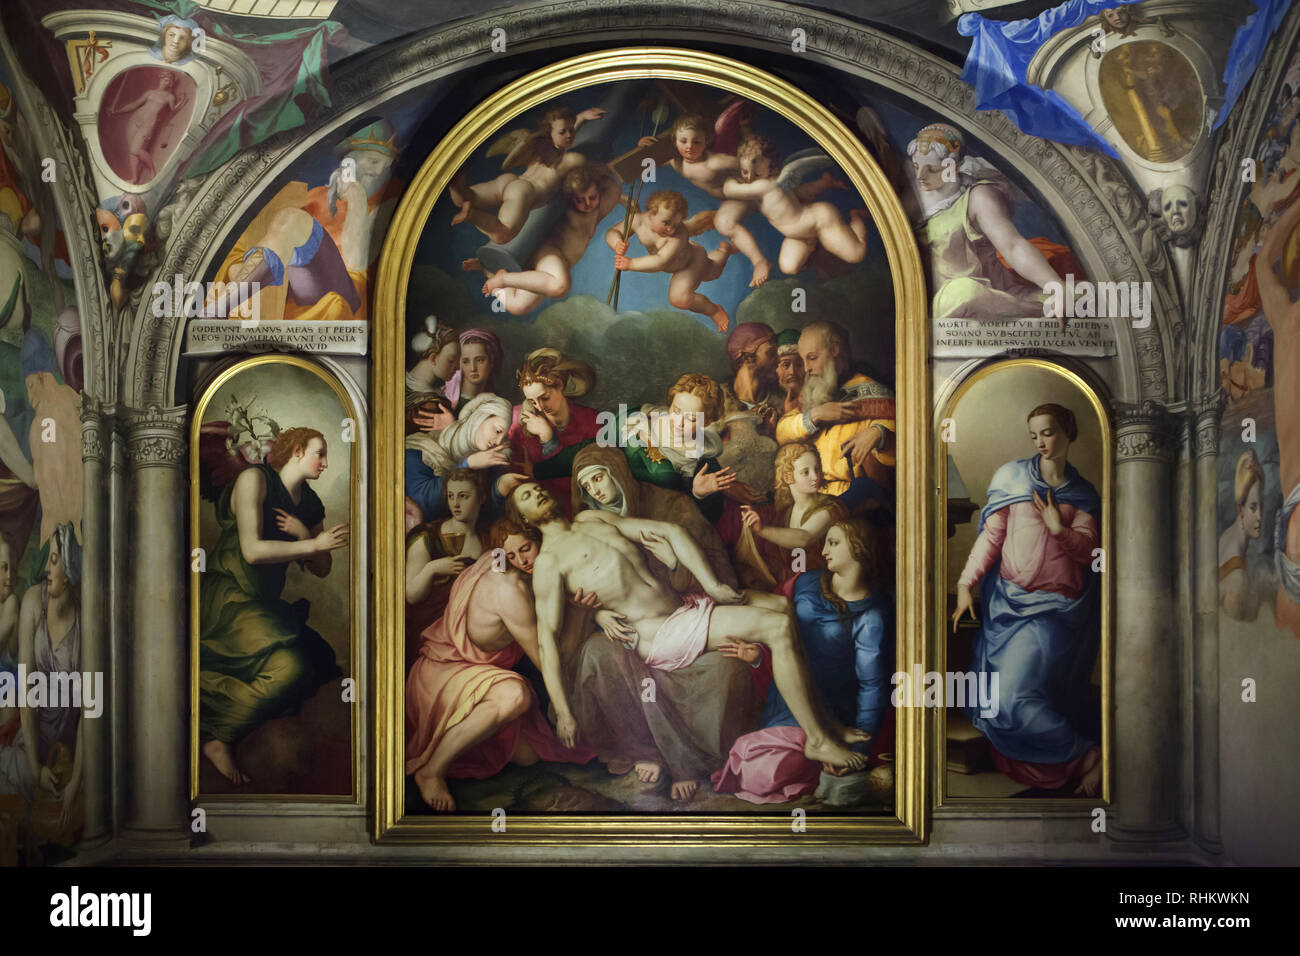 Altar Gemälde 'Deposition Christi' (1553) und "Verkündigung" (1564) von Italienischen manieristischen Malers Agnolo Bronzino (1540-1545) in der Cappella di Eleonora (Kapelle von Eleanor) in den Wohnungen von Eleonore von Toledo (Quartiere di Eleonora) im Palazzo Vecchio in Florenz, Toskana, Italien. Wandmalerei und Deckenmalerei datiert von 1540 bis 1545 sind auch Arbeiten von Bronzino. Stockfoto